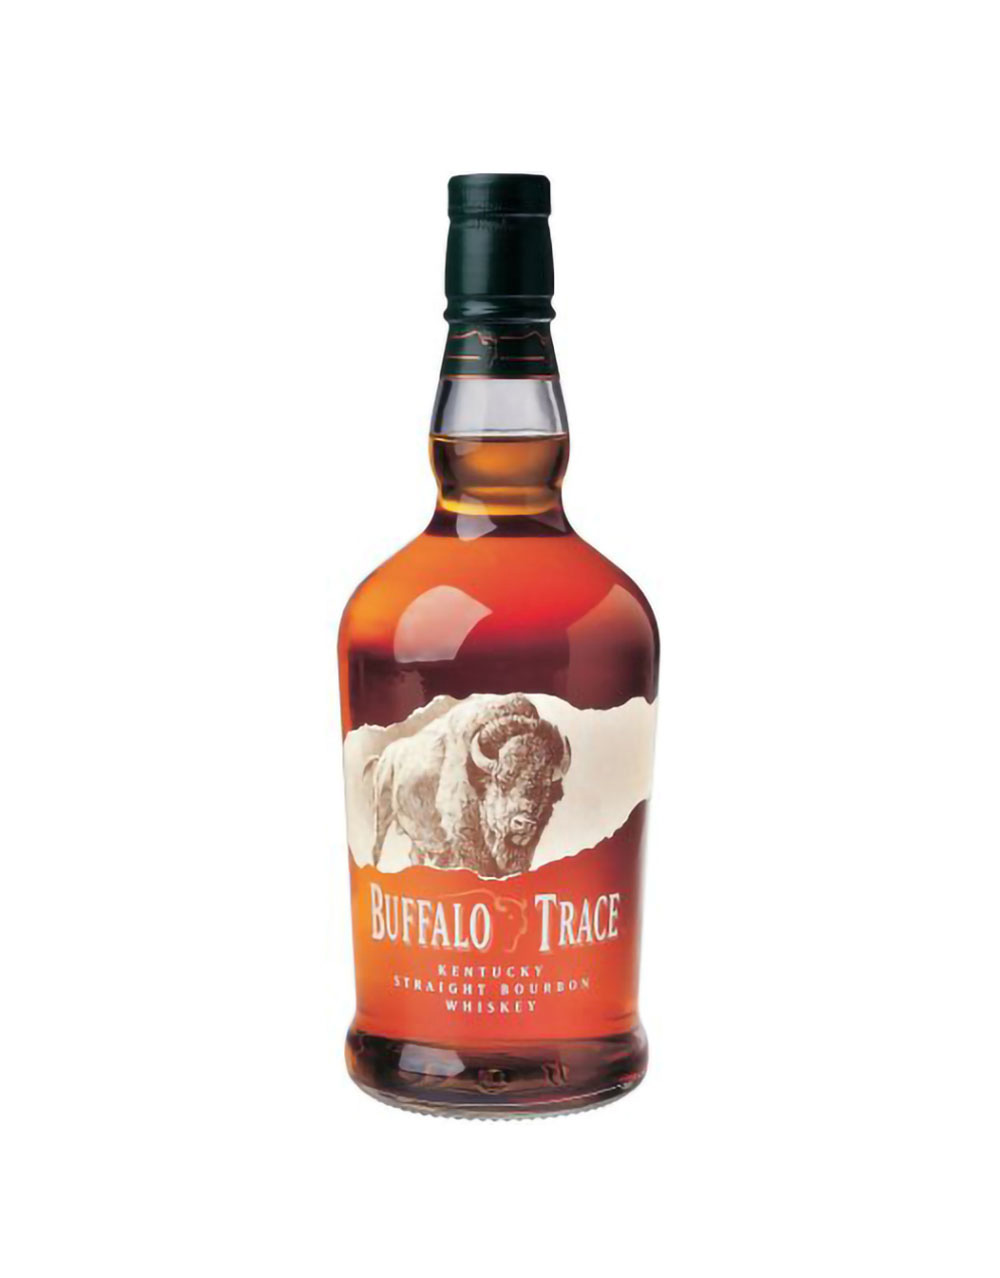 Ballast Point Devil's Share Single Malt Whiskey